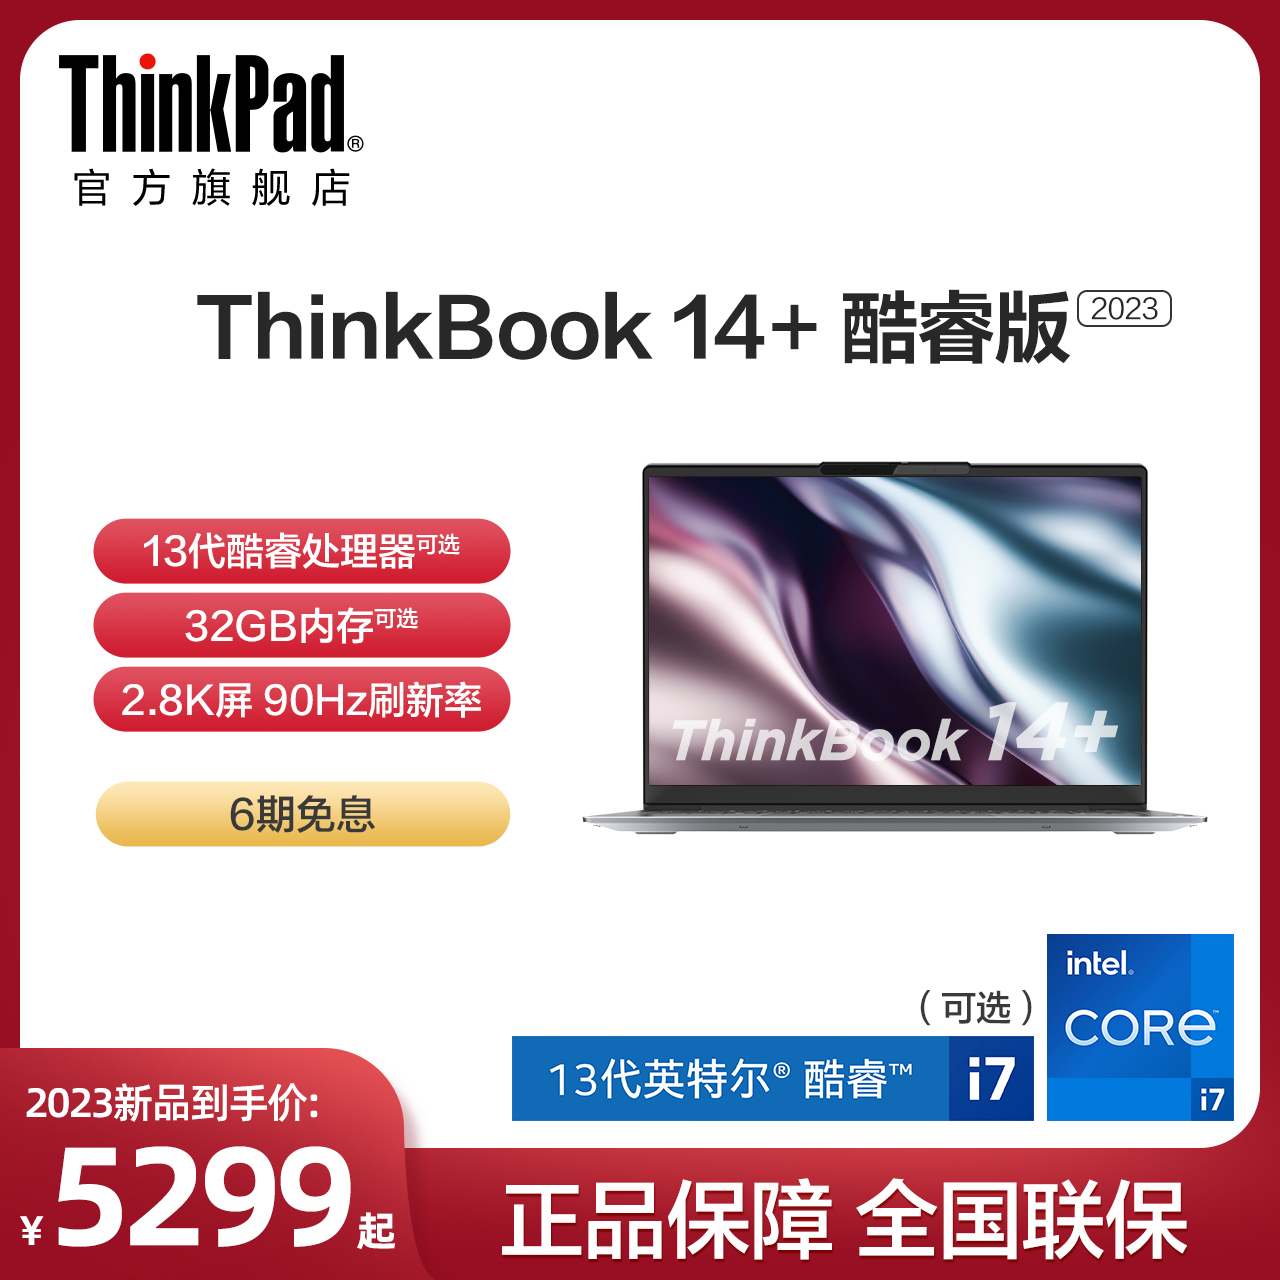 【新品首发】联想笔记本电脑ThinkBook14+ 13代英特尔酷睿i5/i7标压 16G 512G 游戏本轻薄便携学生商务本